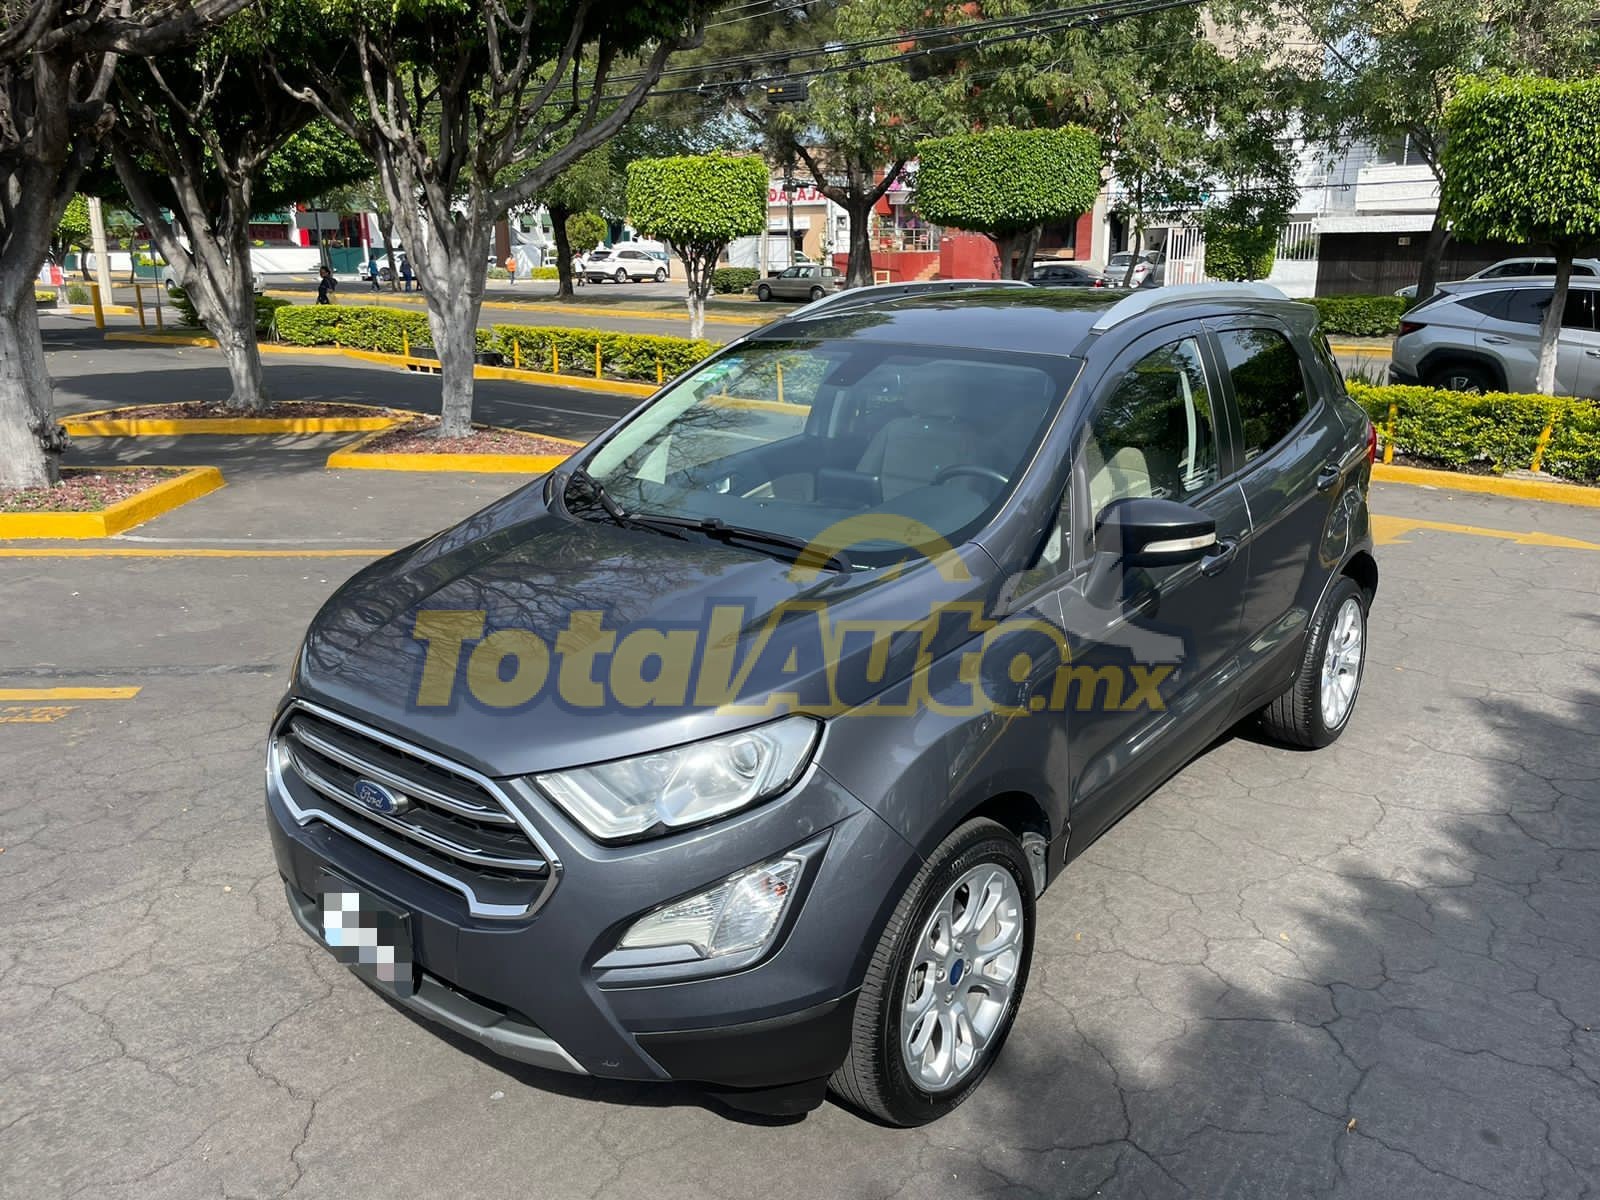 Ford Ecosport Titanium 2021 total auto mx (1)